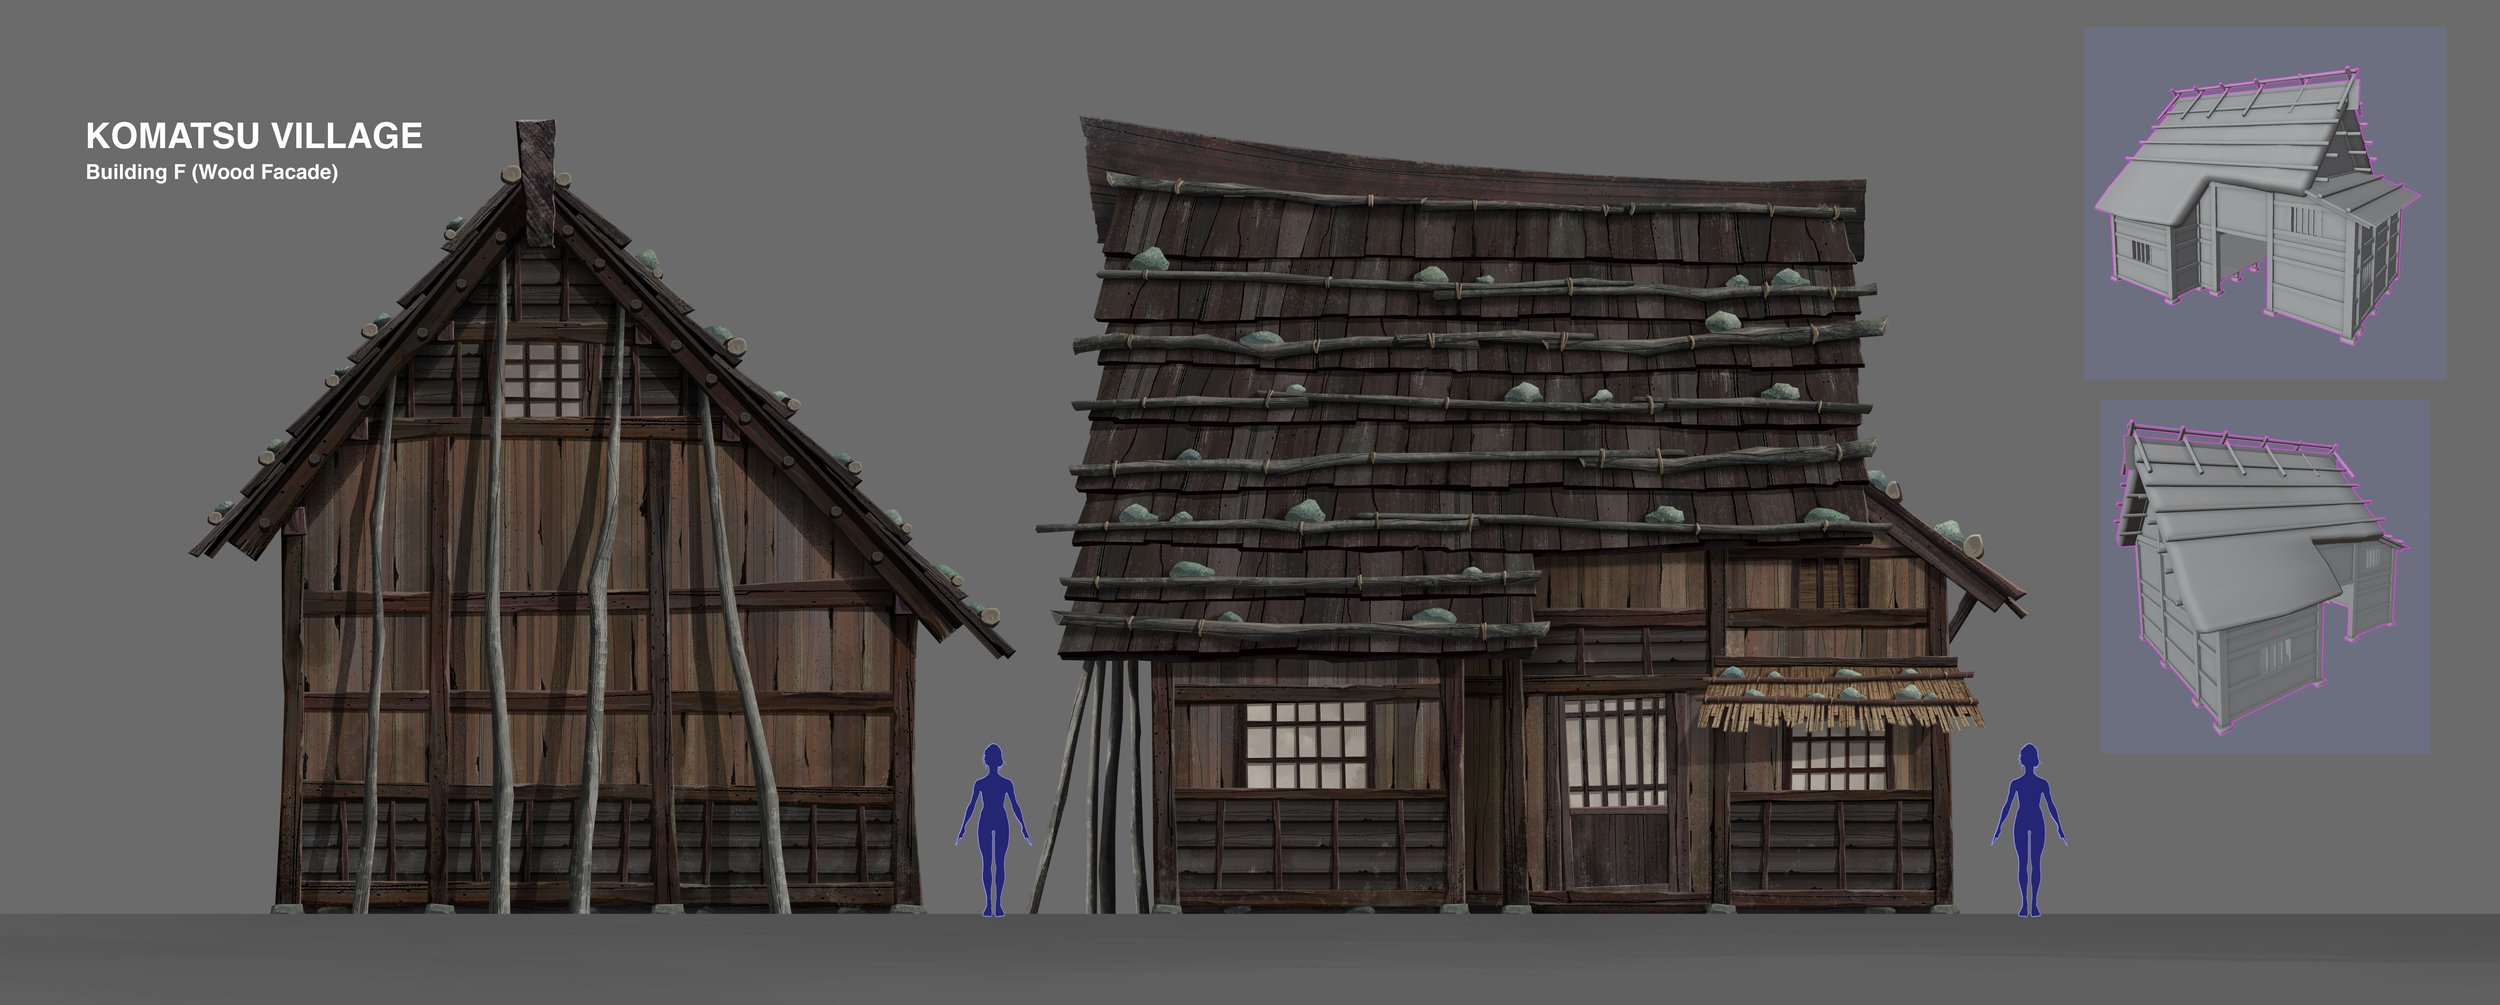 Komatsu Village Building F Wood v03.jpg